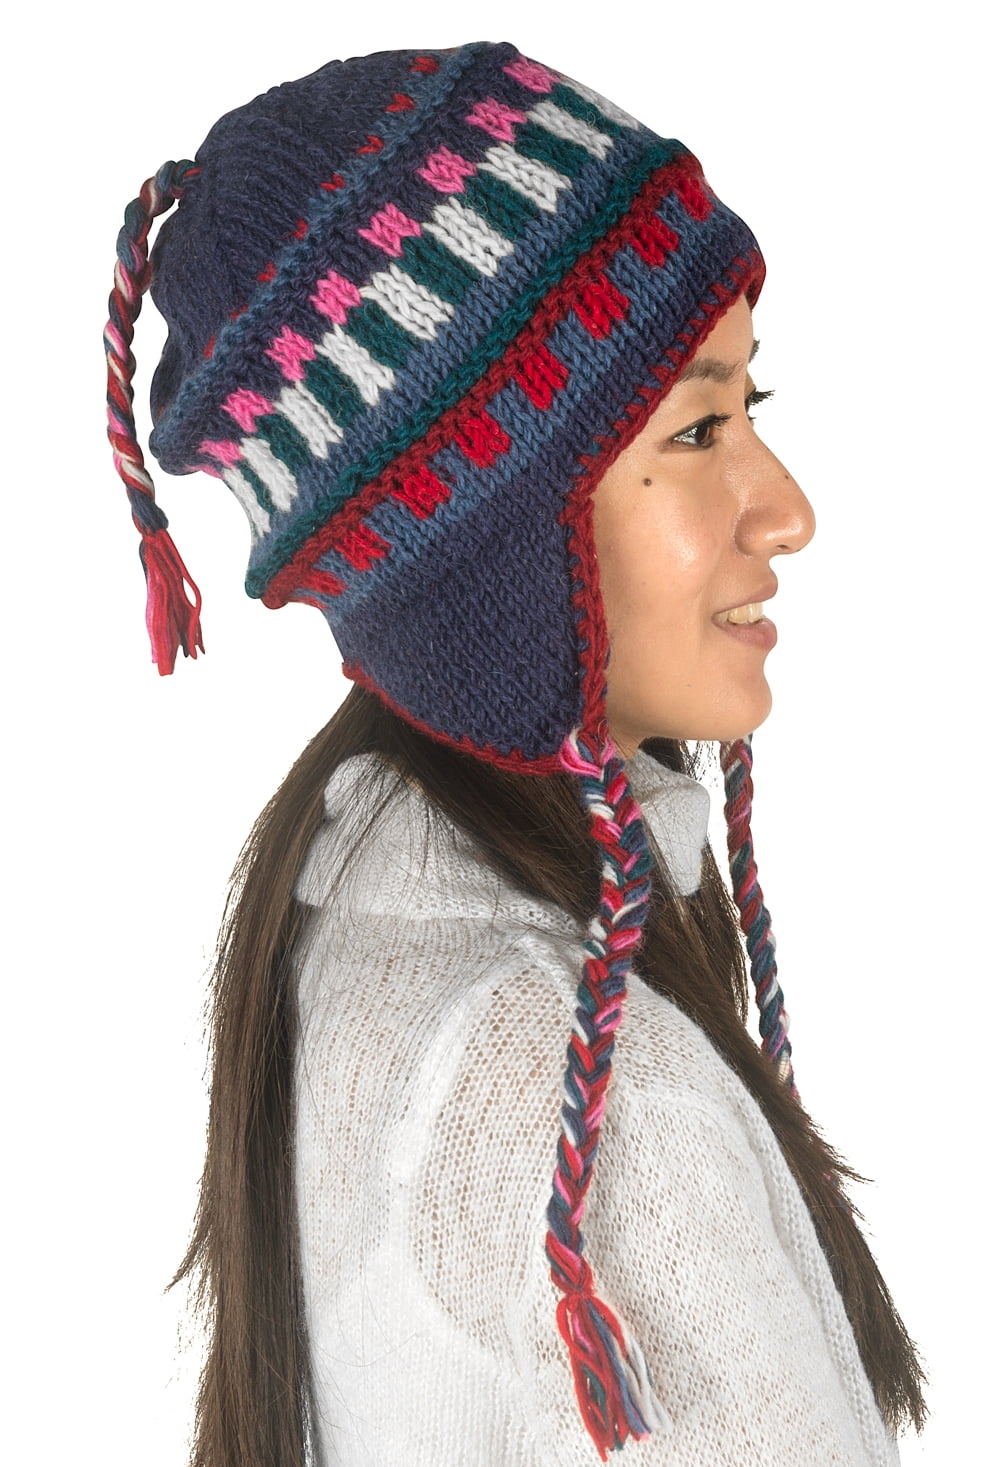 Knit Wool Hat EARFLAP HAT Ski Hat Handmade- Adult or Teen Gray Hat Knit Earflap Hat Gray Wool Hat Earflap Hat Knit Hat